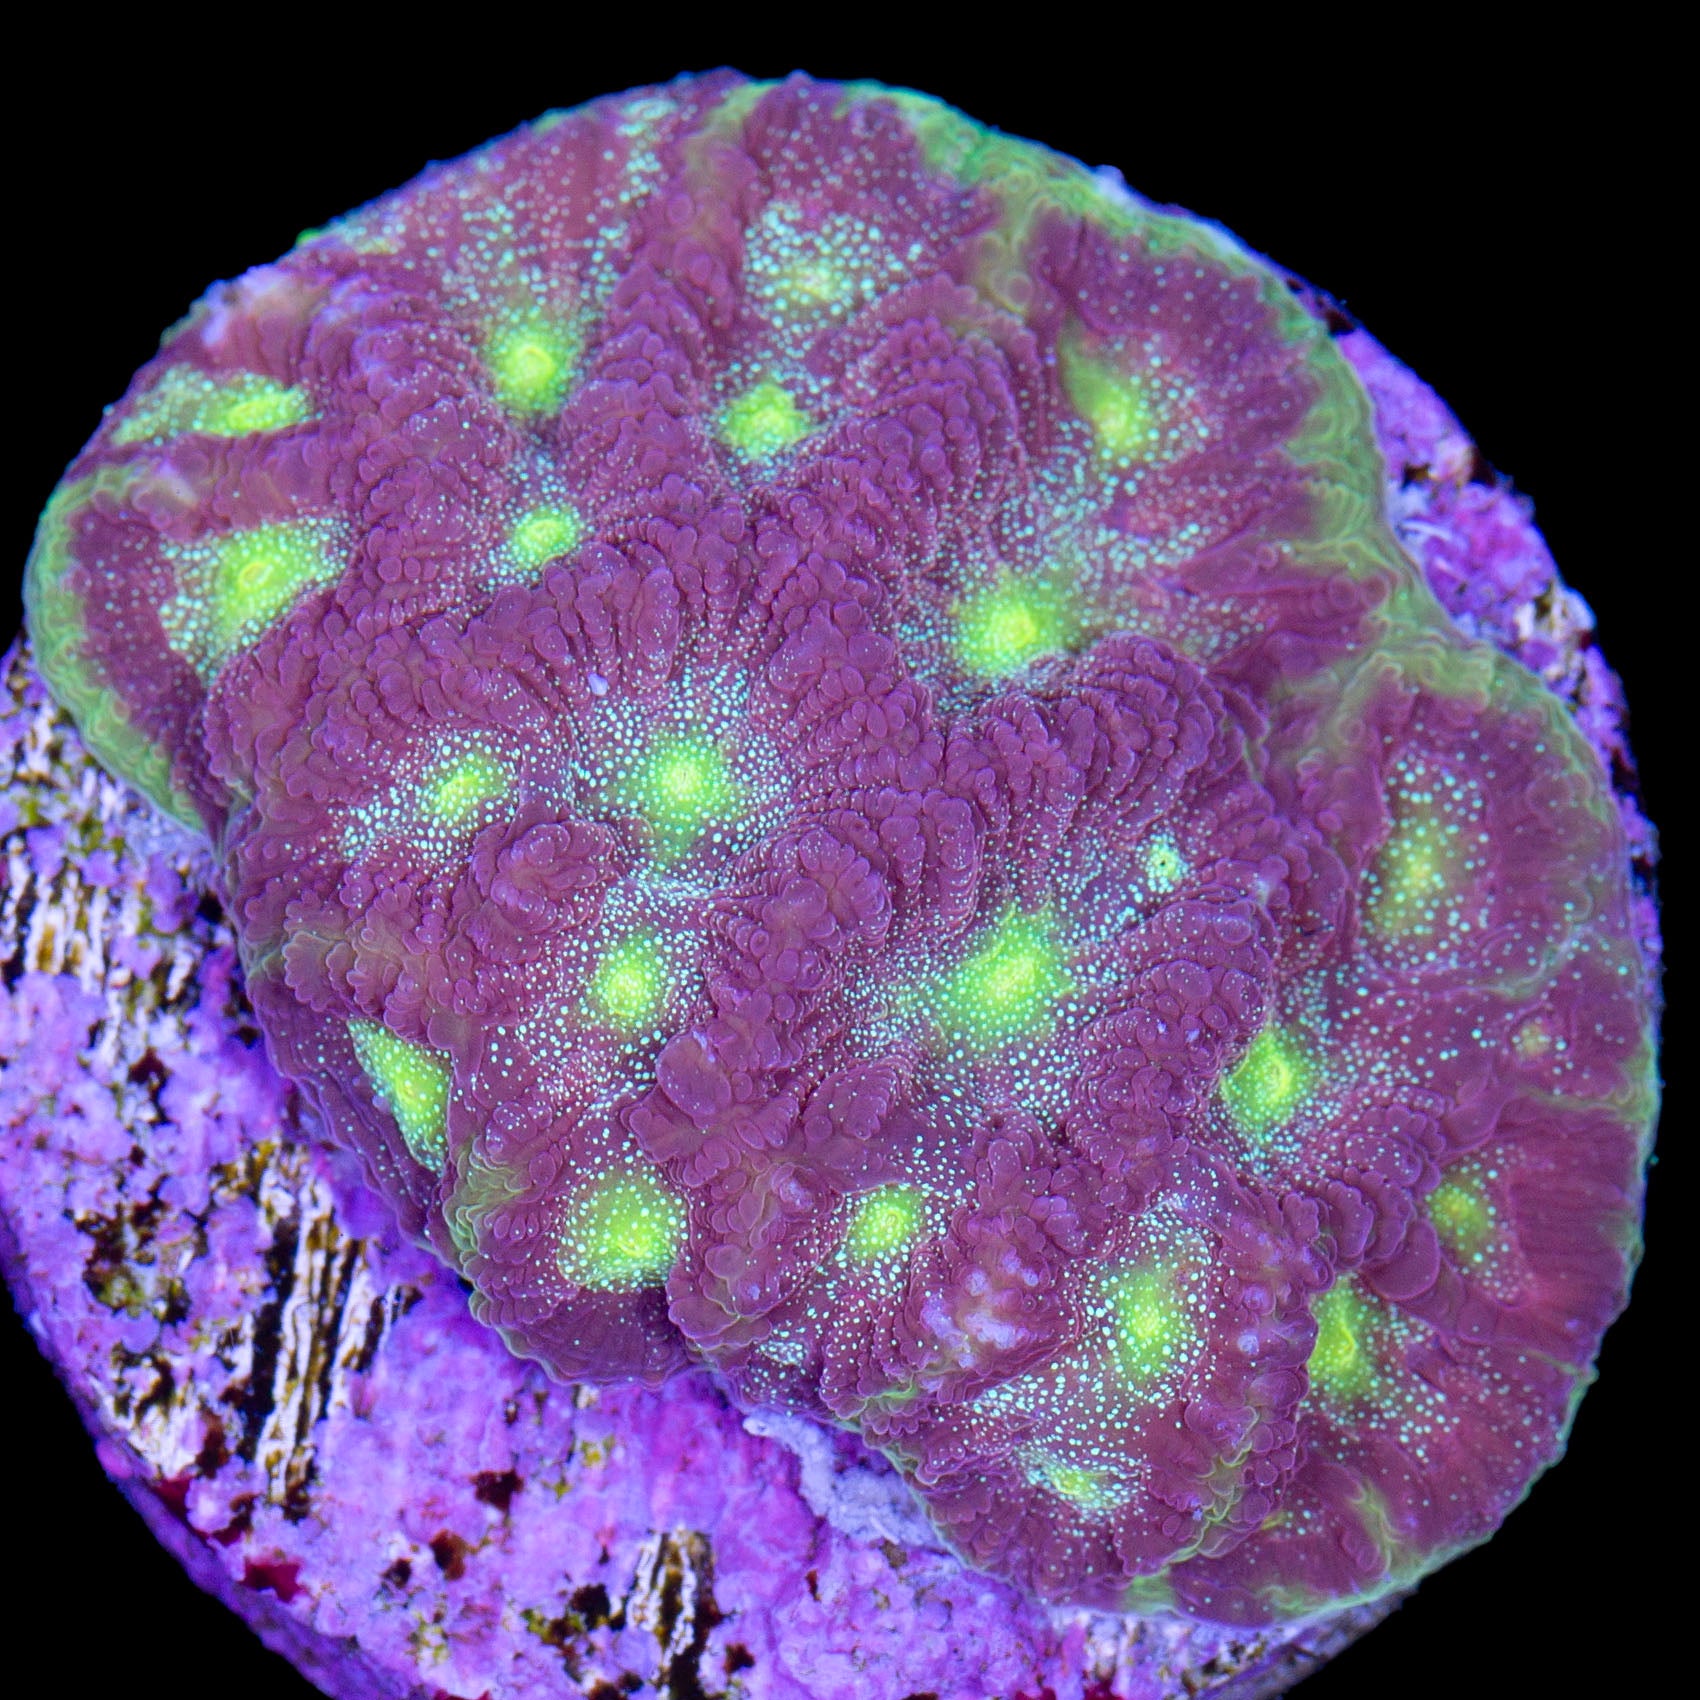 Fairy Dust Favia Coral